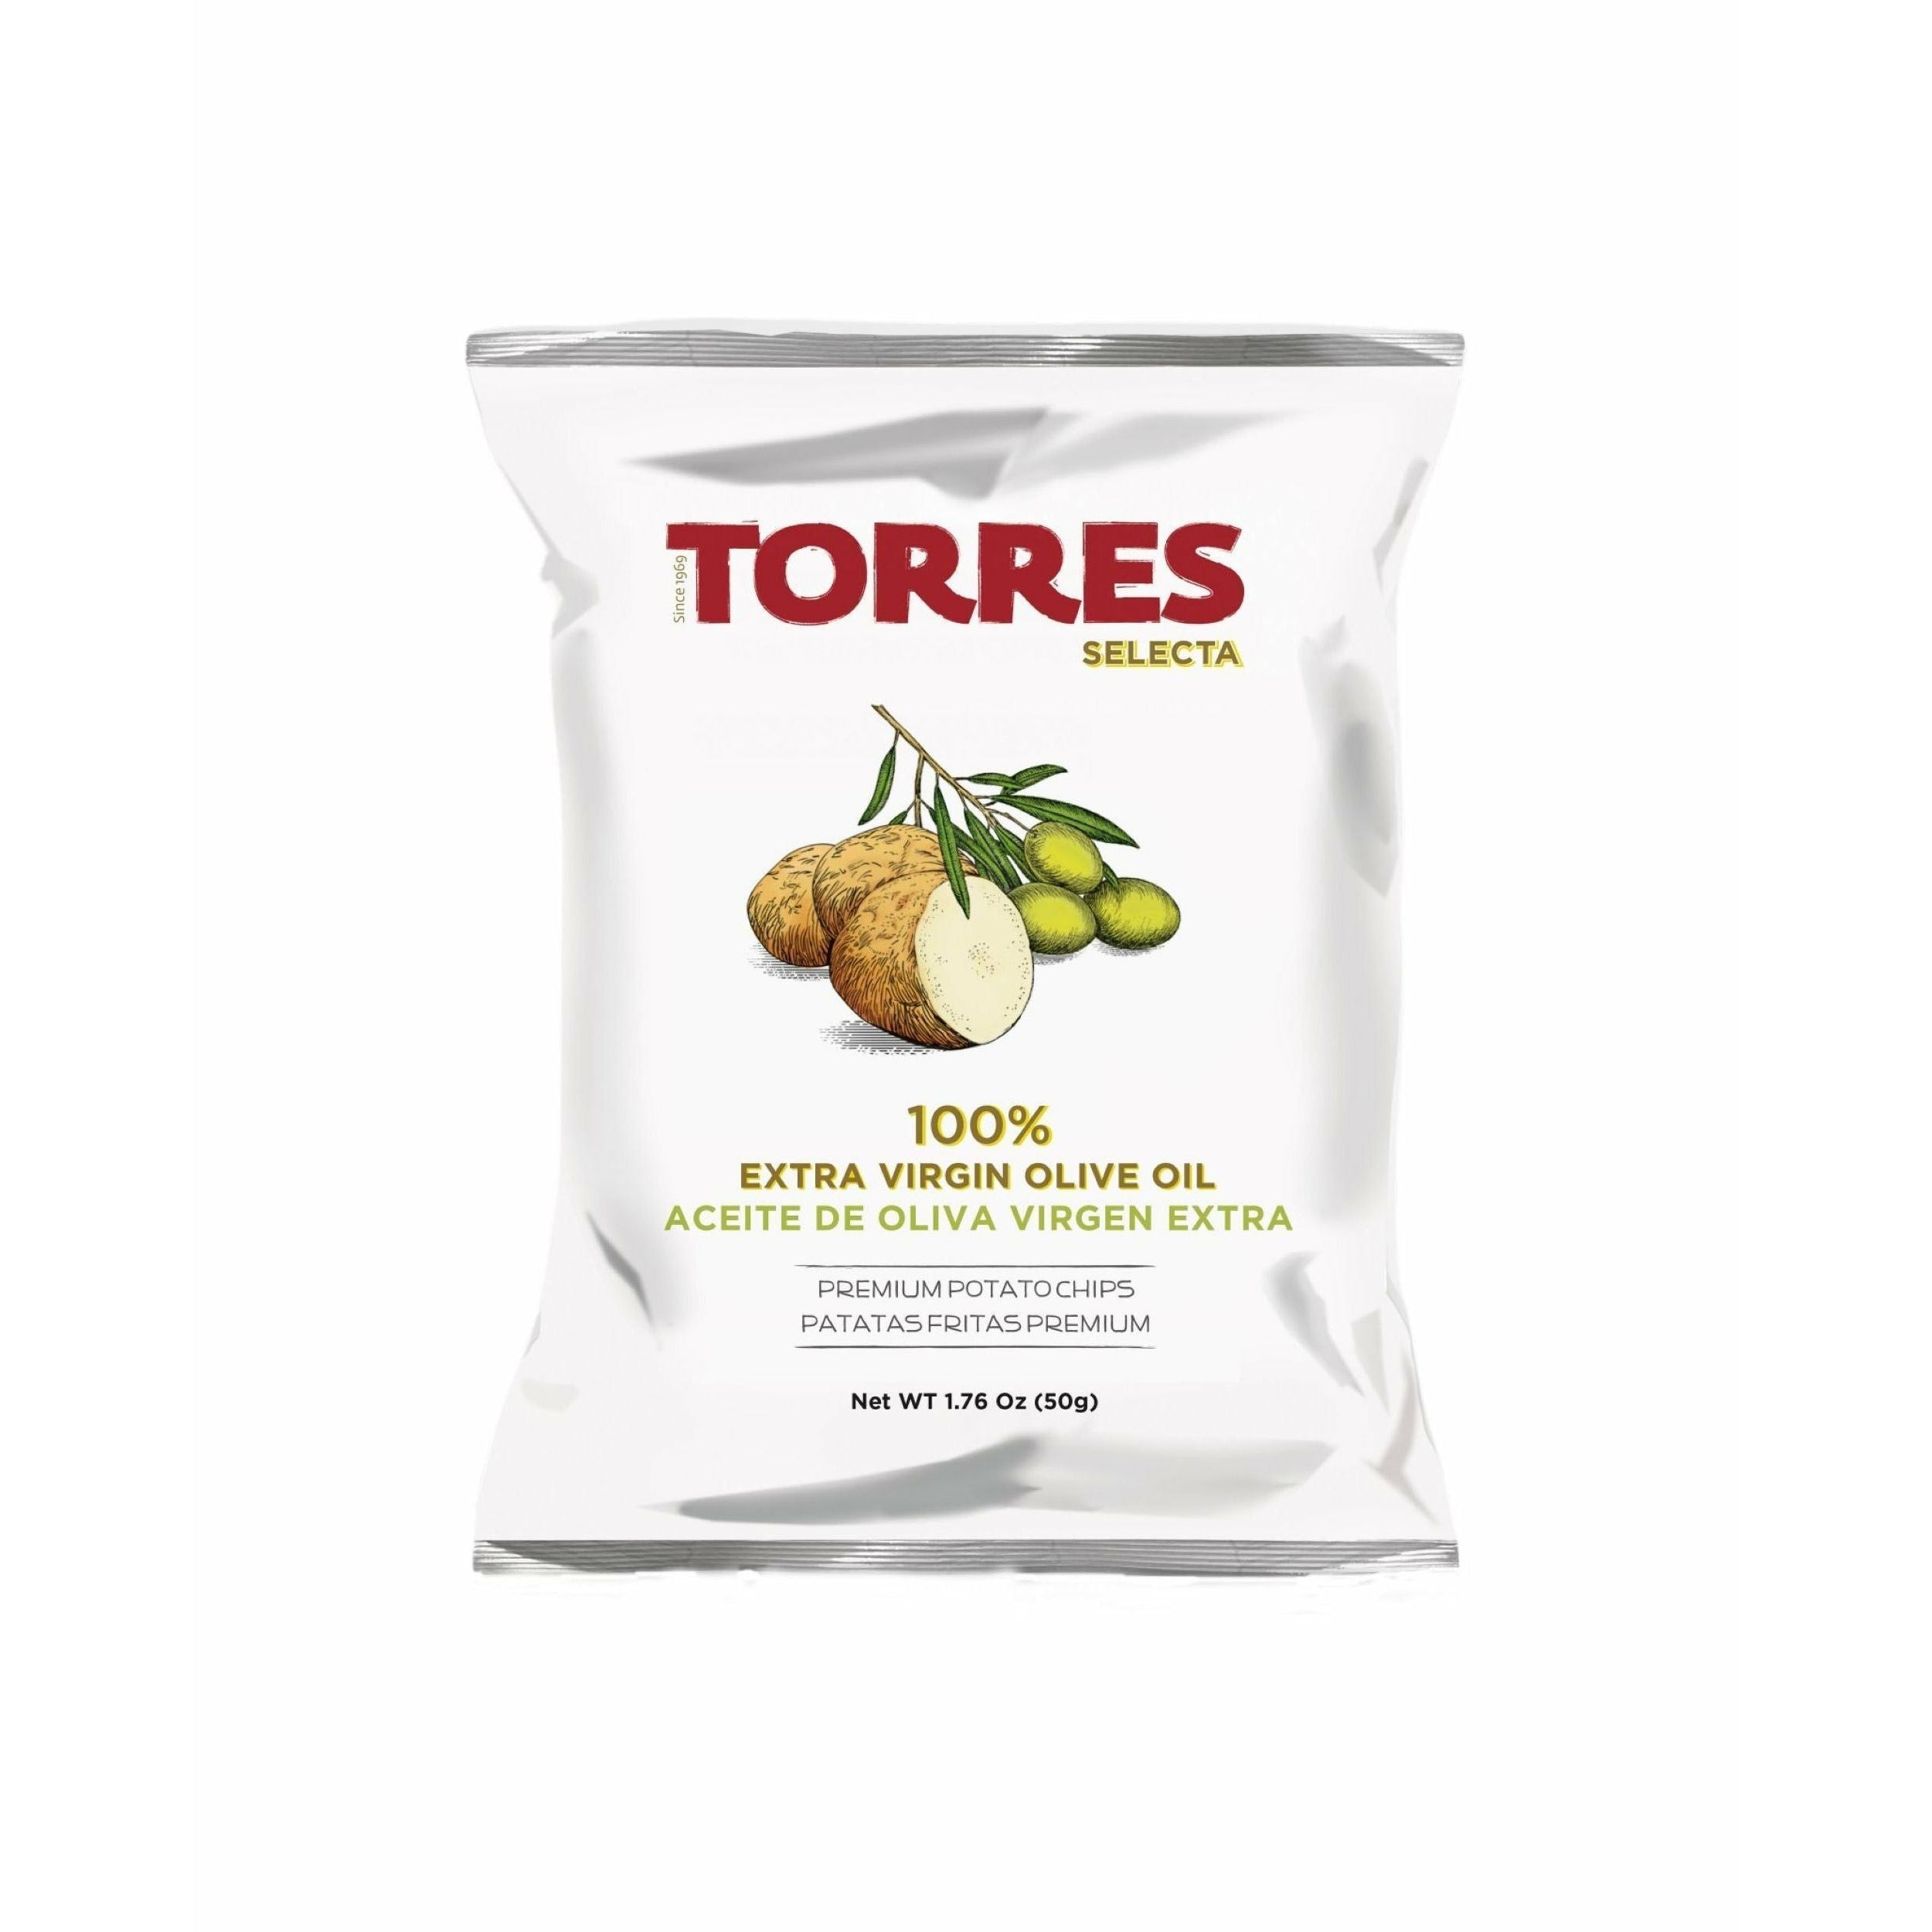 Torres Selecta Olivenöl-Chips, 50g